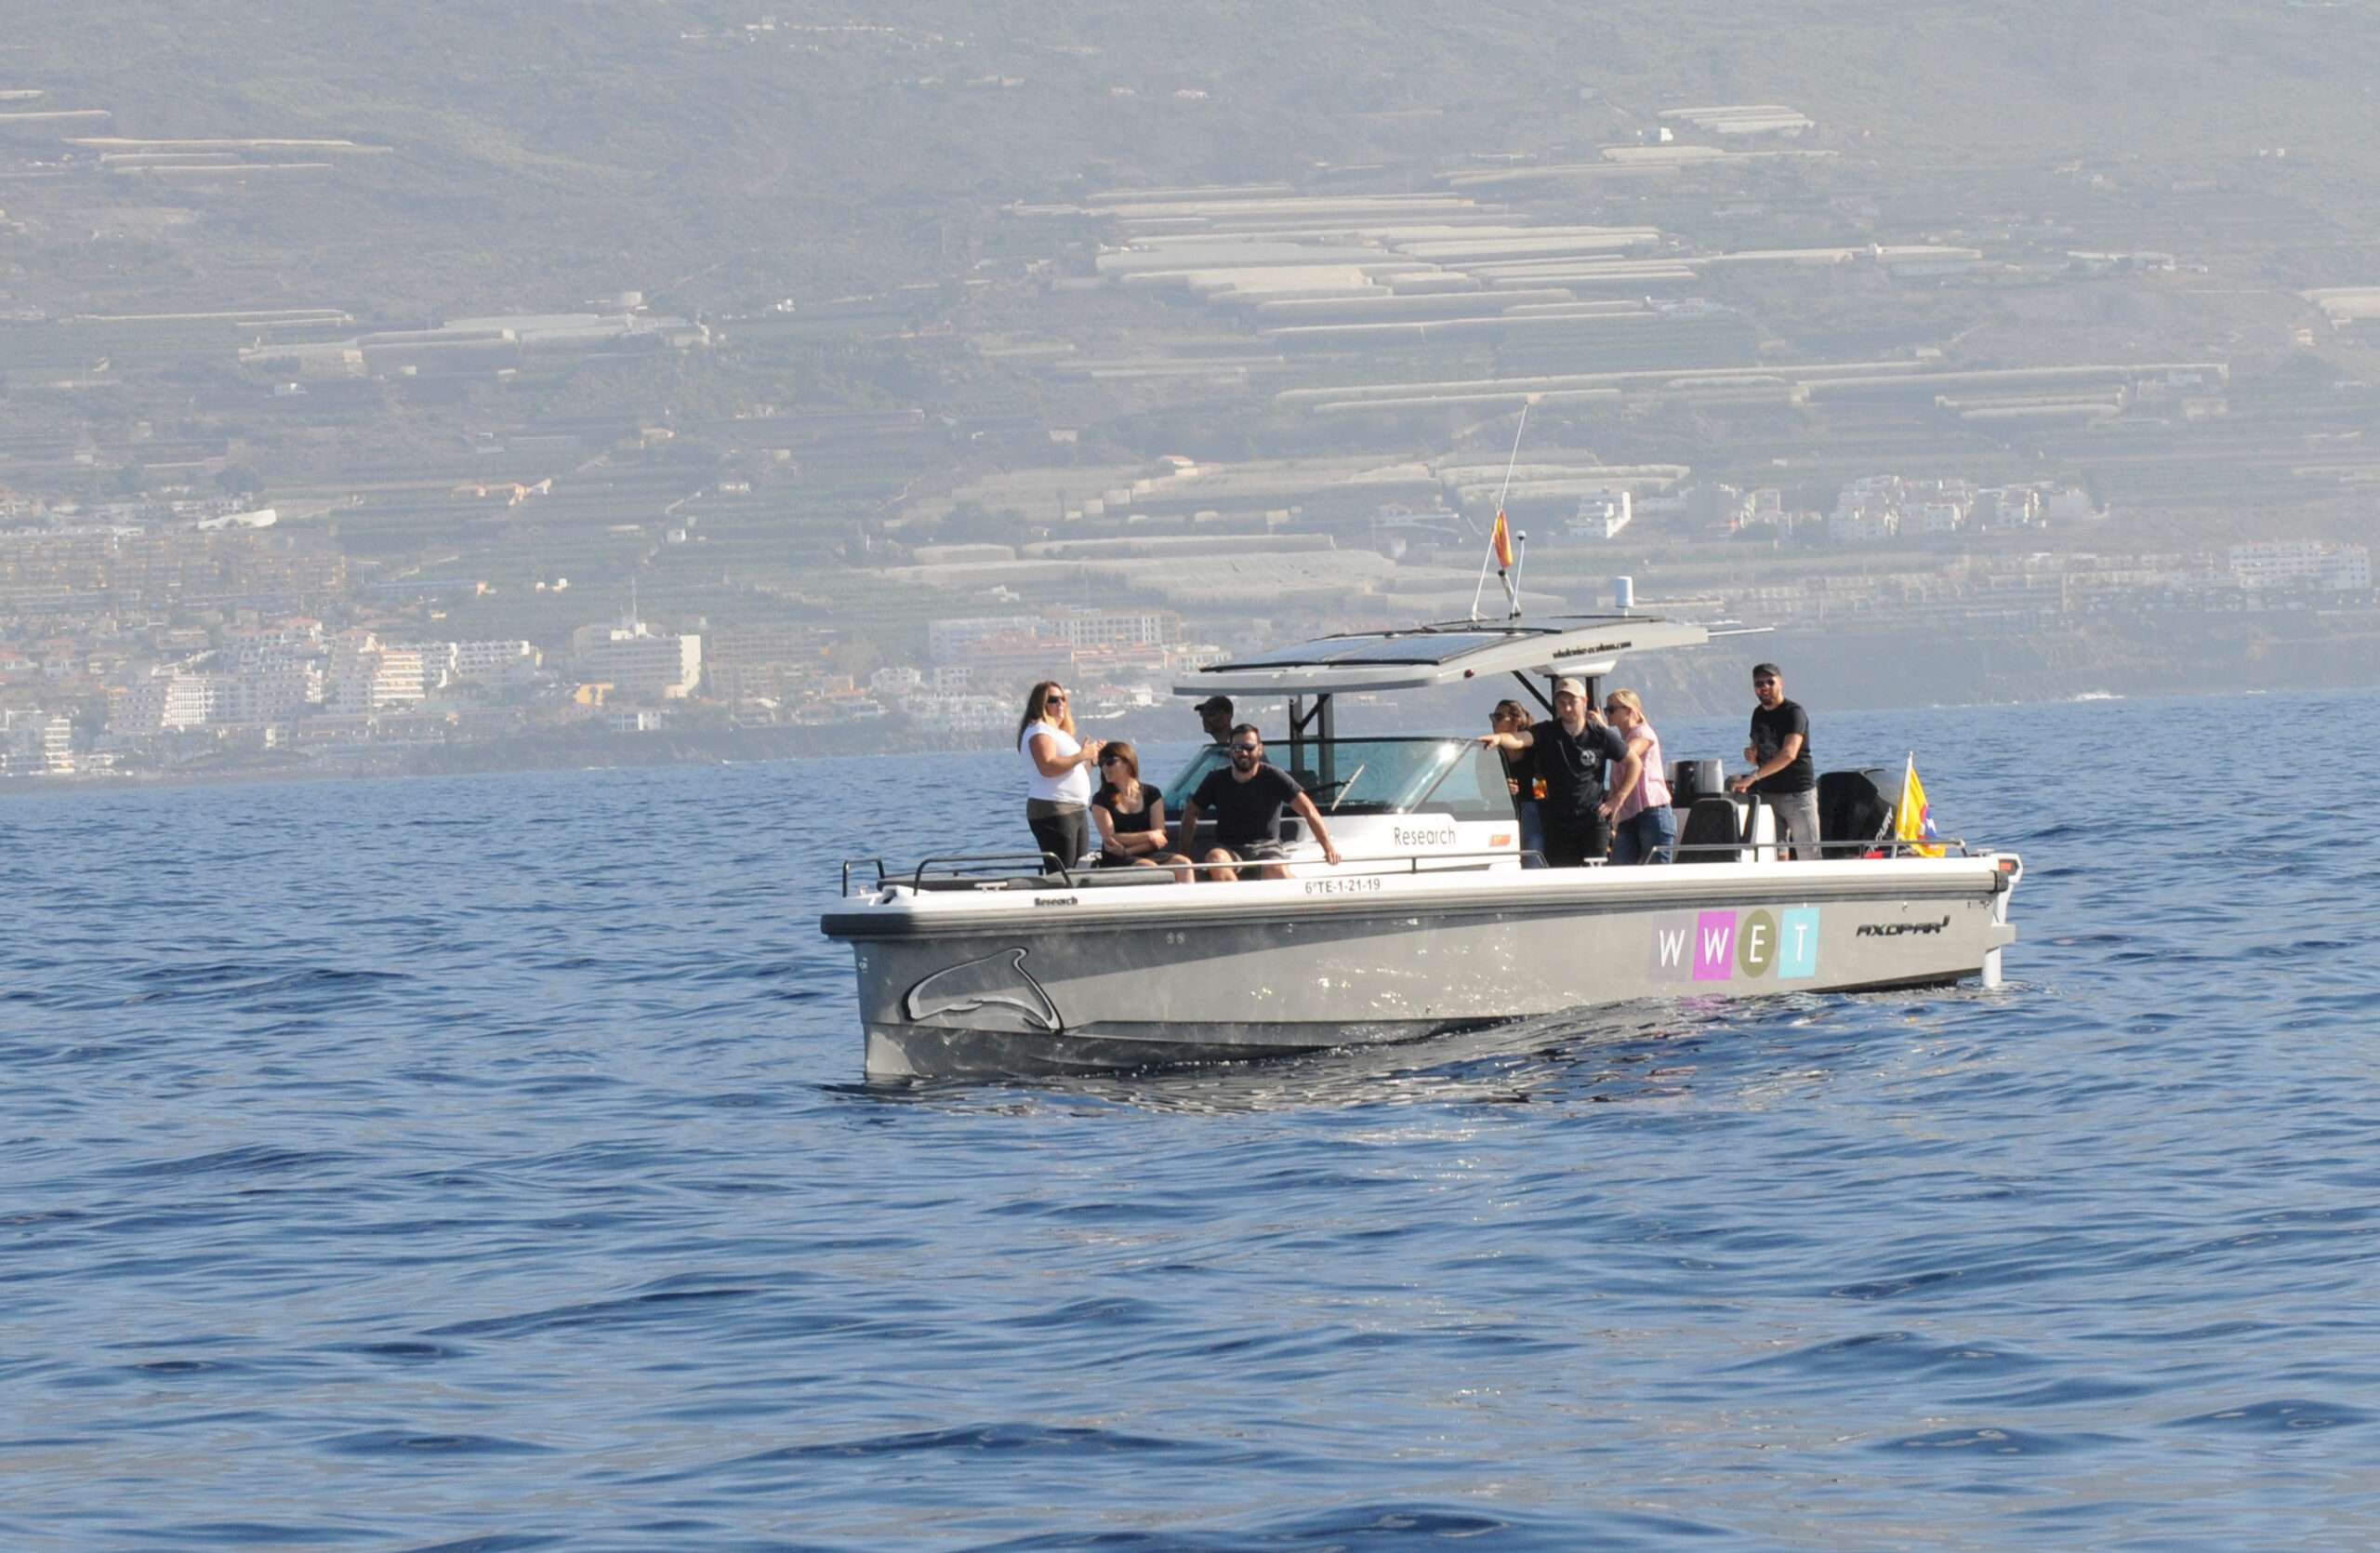 Fotografía del barco L'Esiel de avistamiento de cetáceos y delfines en Tenerife